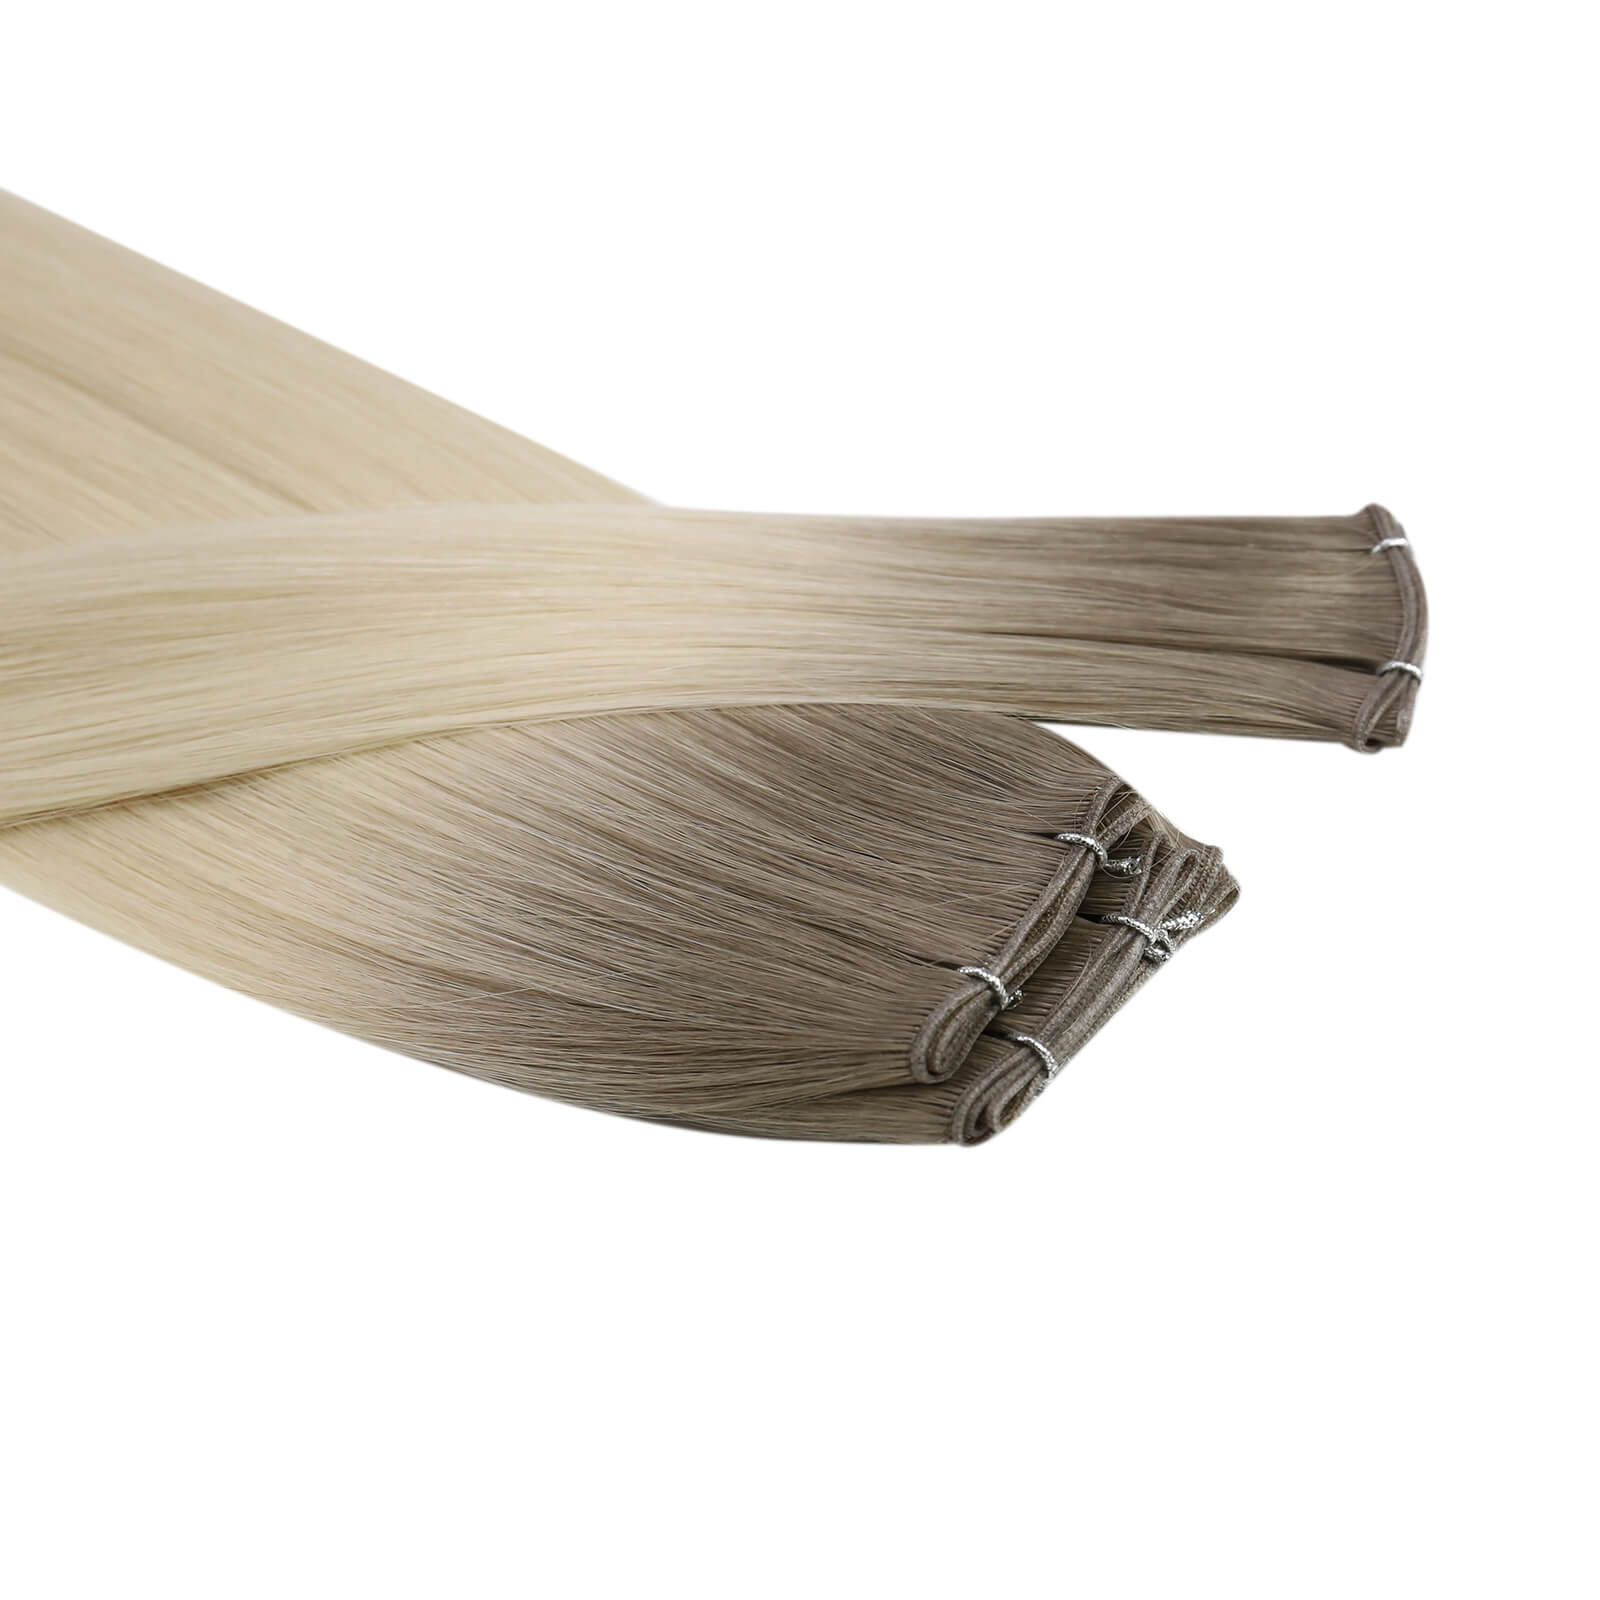 [virgin+]Genius Weft Hair Extensions virgin+ Hair Bundles Human Straight Weave Ombre#R19/T60